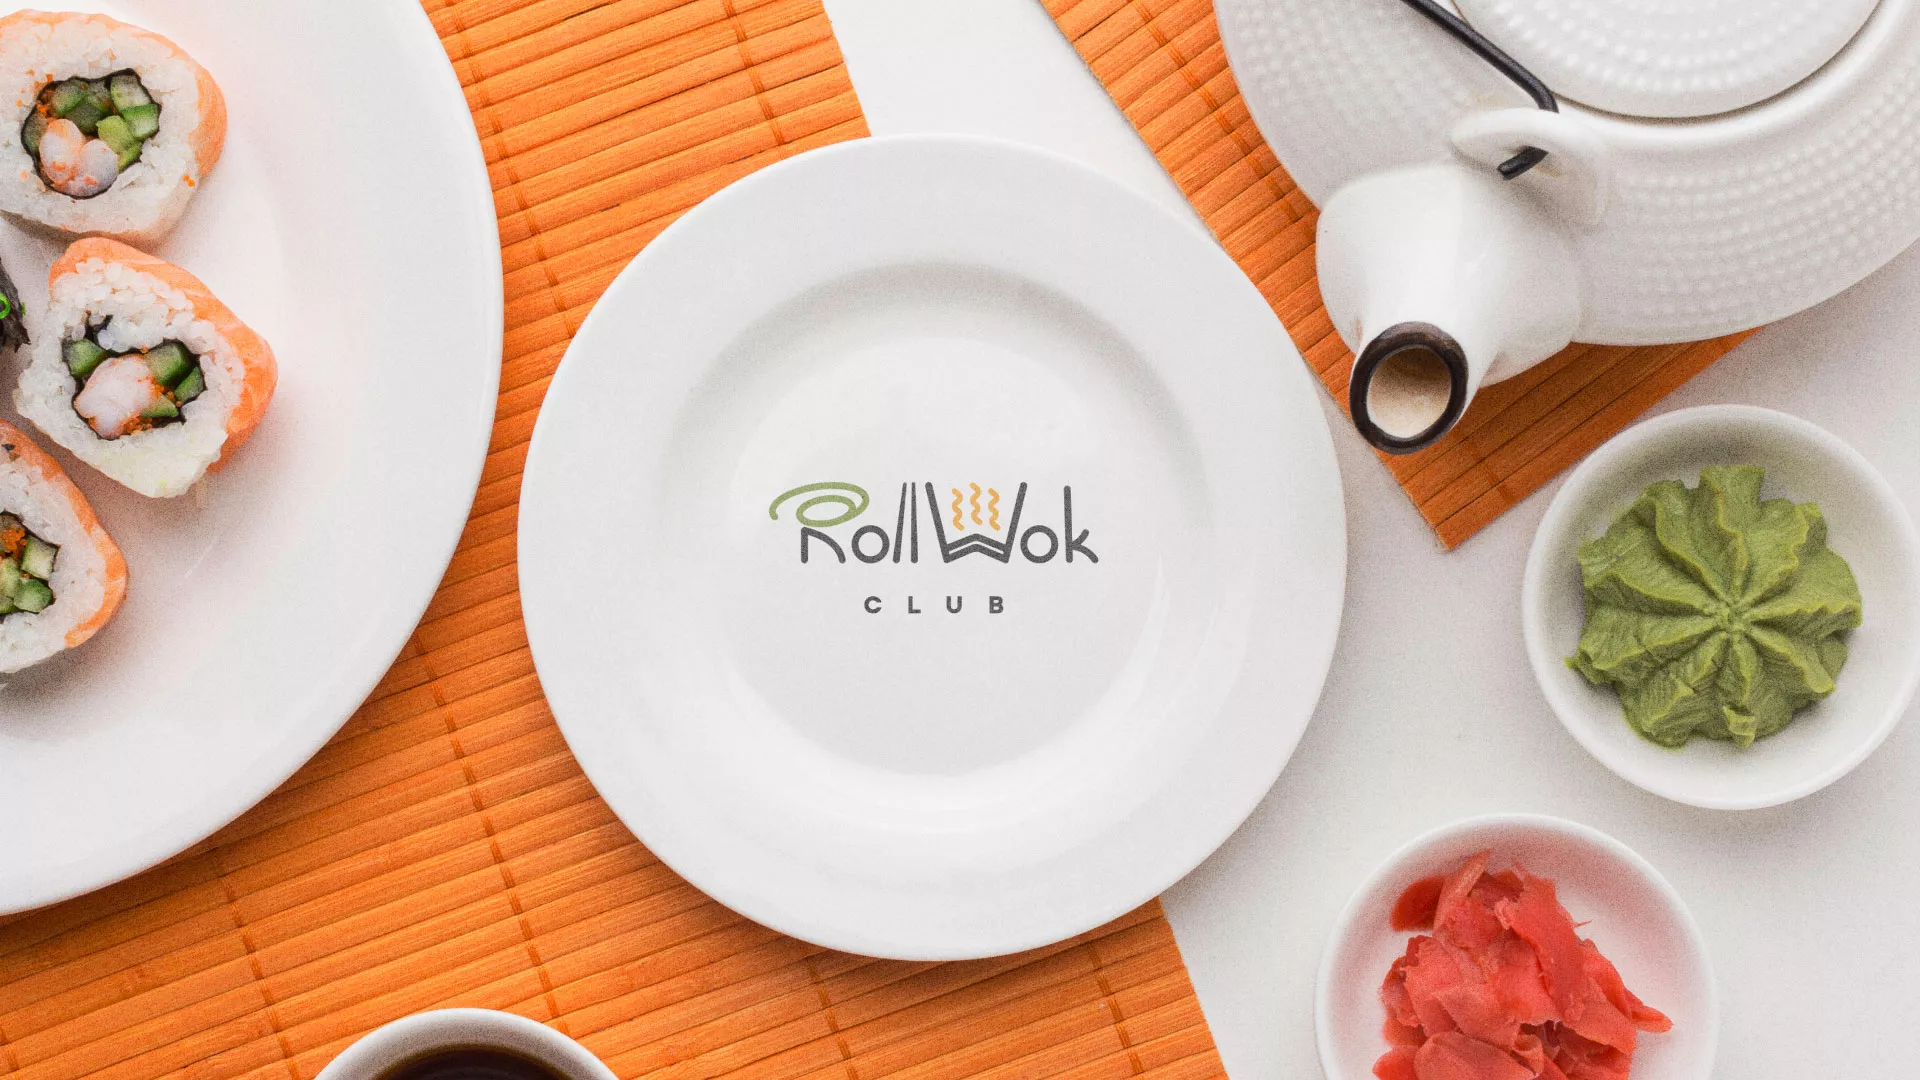 Разработка логотипа и фирменного стиля суши-бара «Roll Wok Club» в Белебее